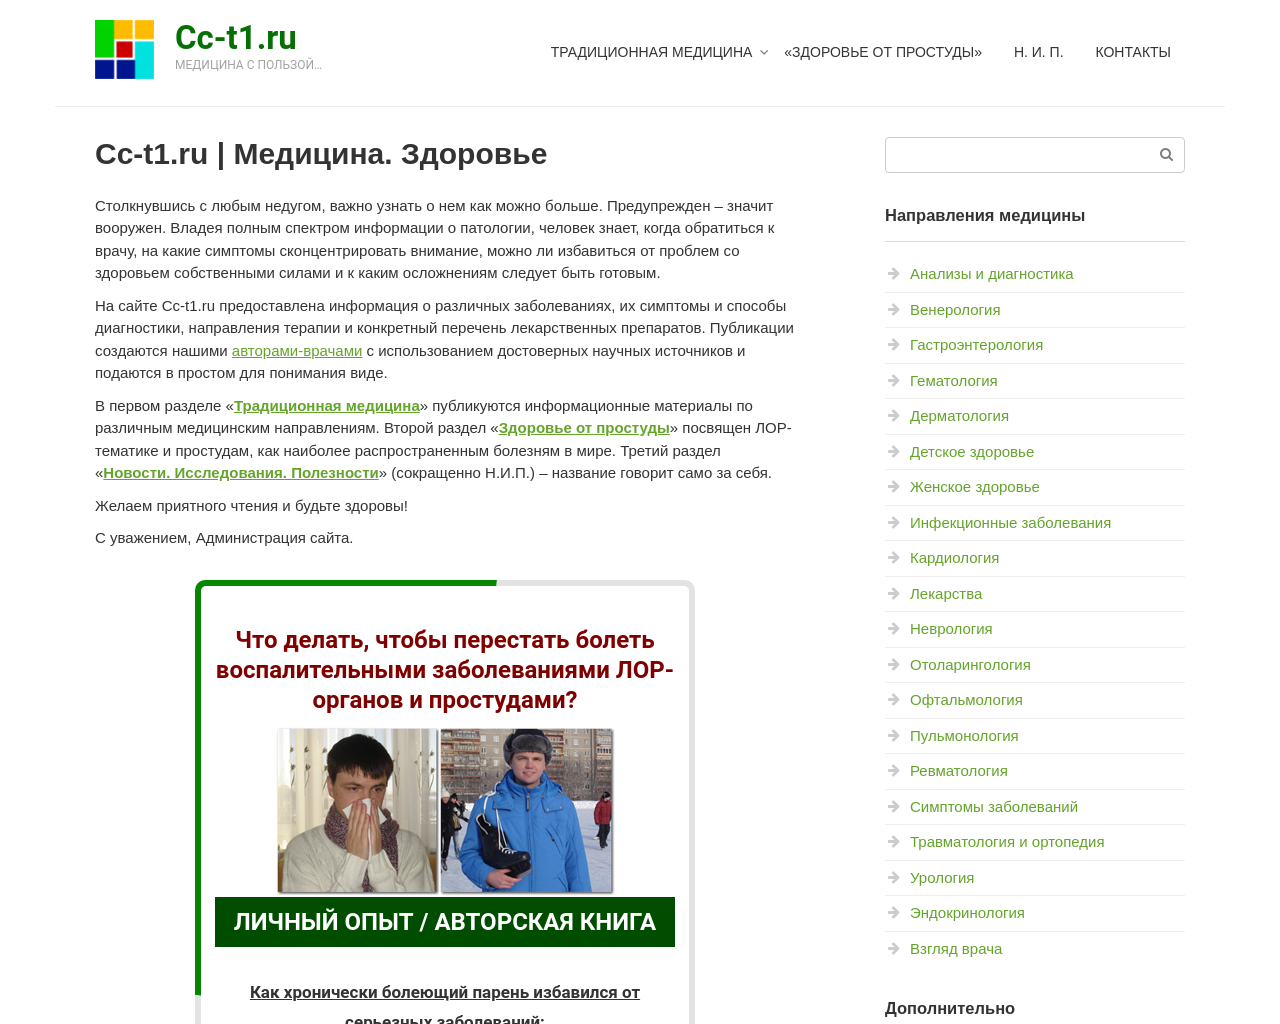 cc-t1.ru